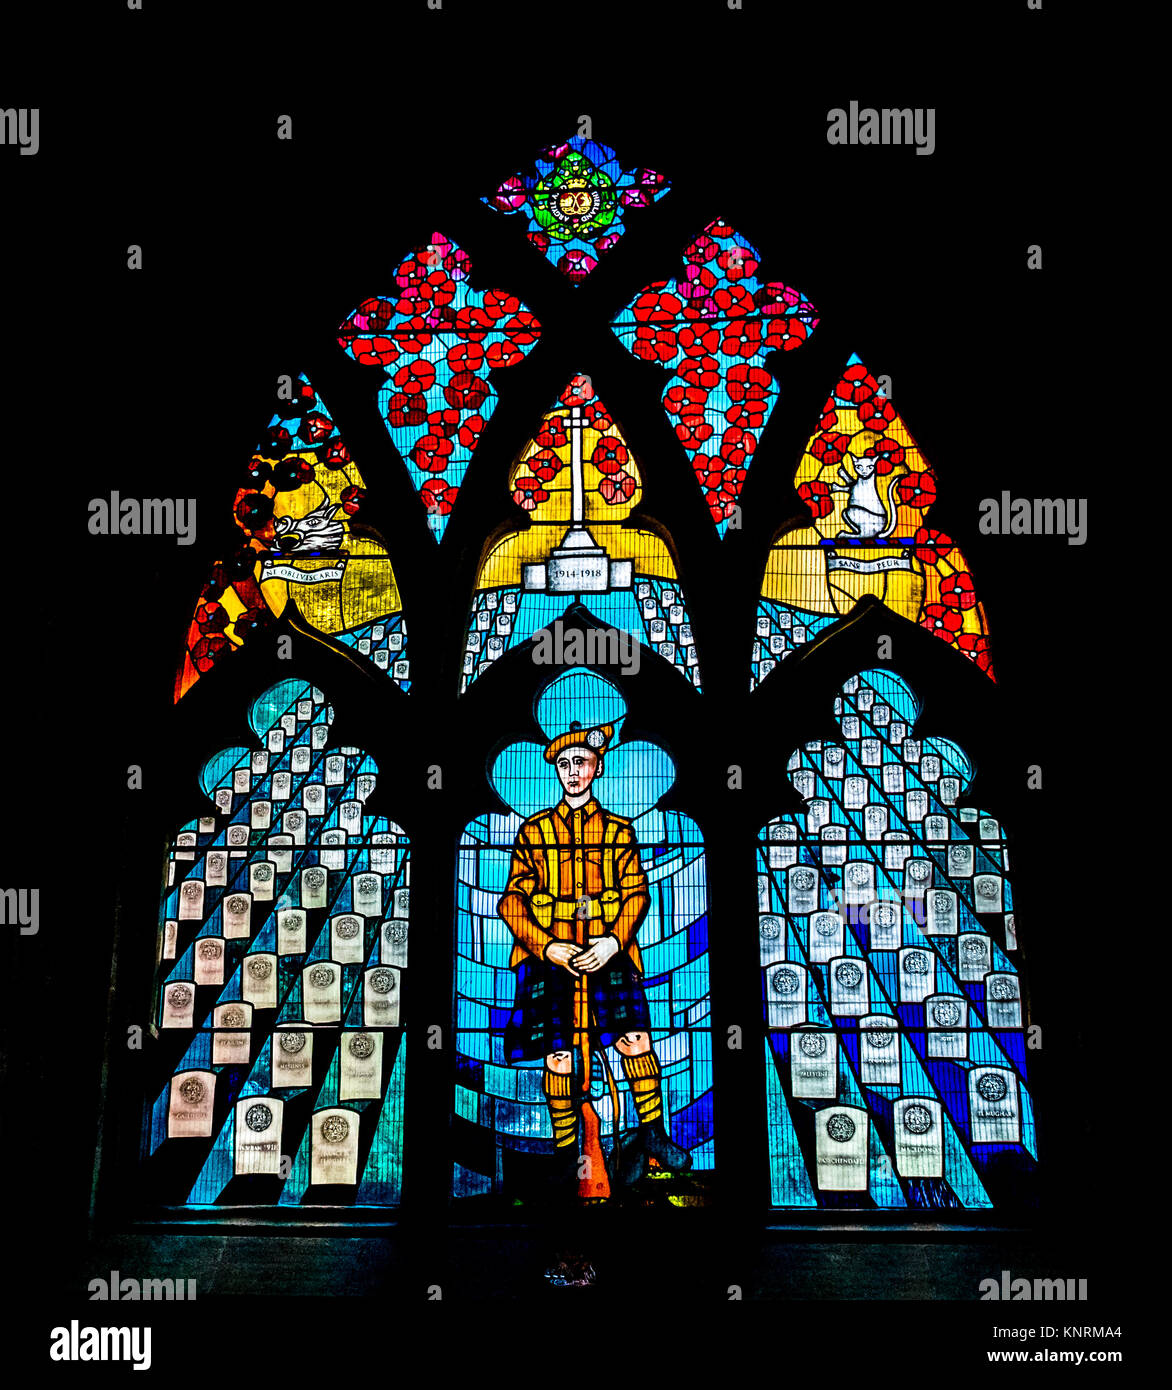 Vitrail, vue de l'intérieur, de l'Eglise Holy Rude, Église Paroissiale de Stirling, Scotland, UK. Commémoration de soldats morts Première Guerre mondiale Banque D'Images